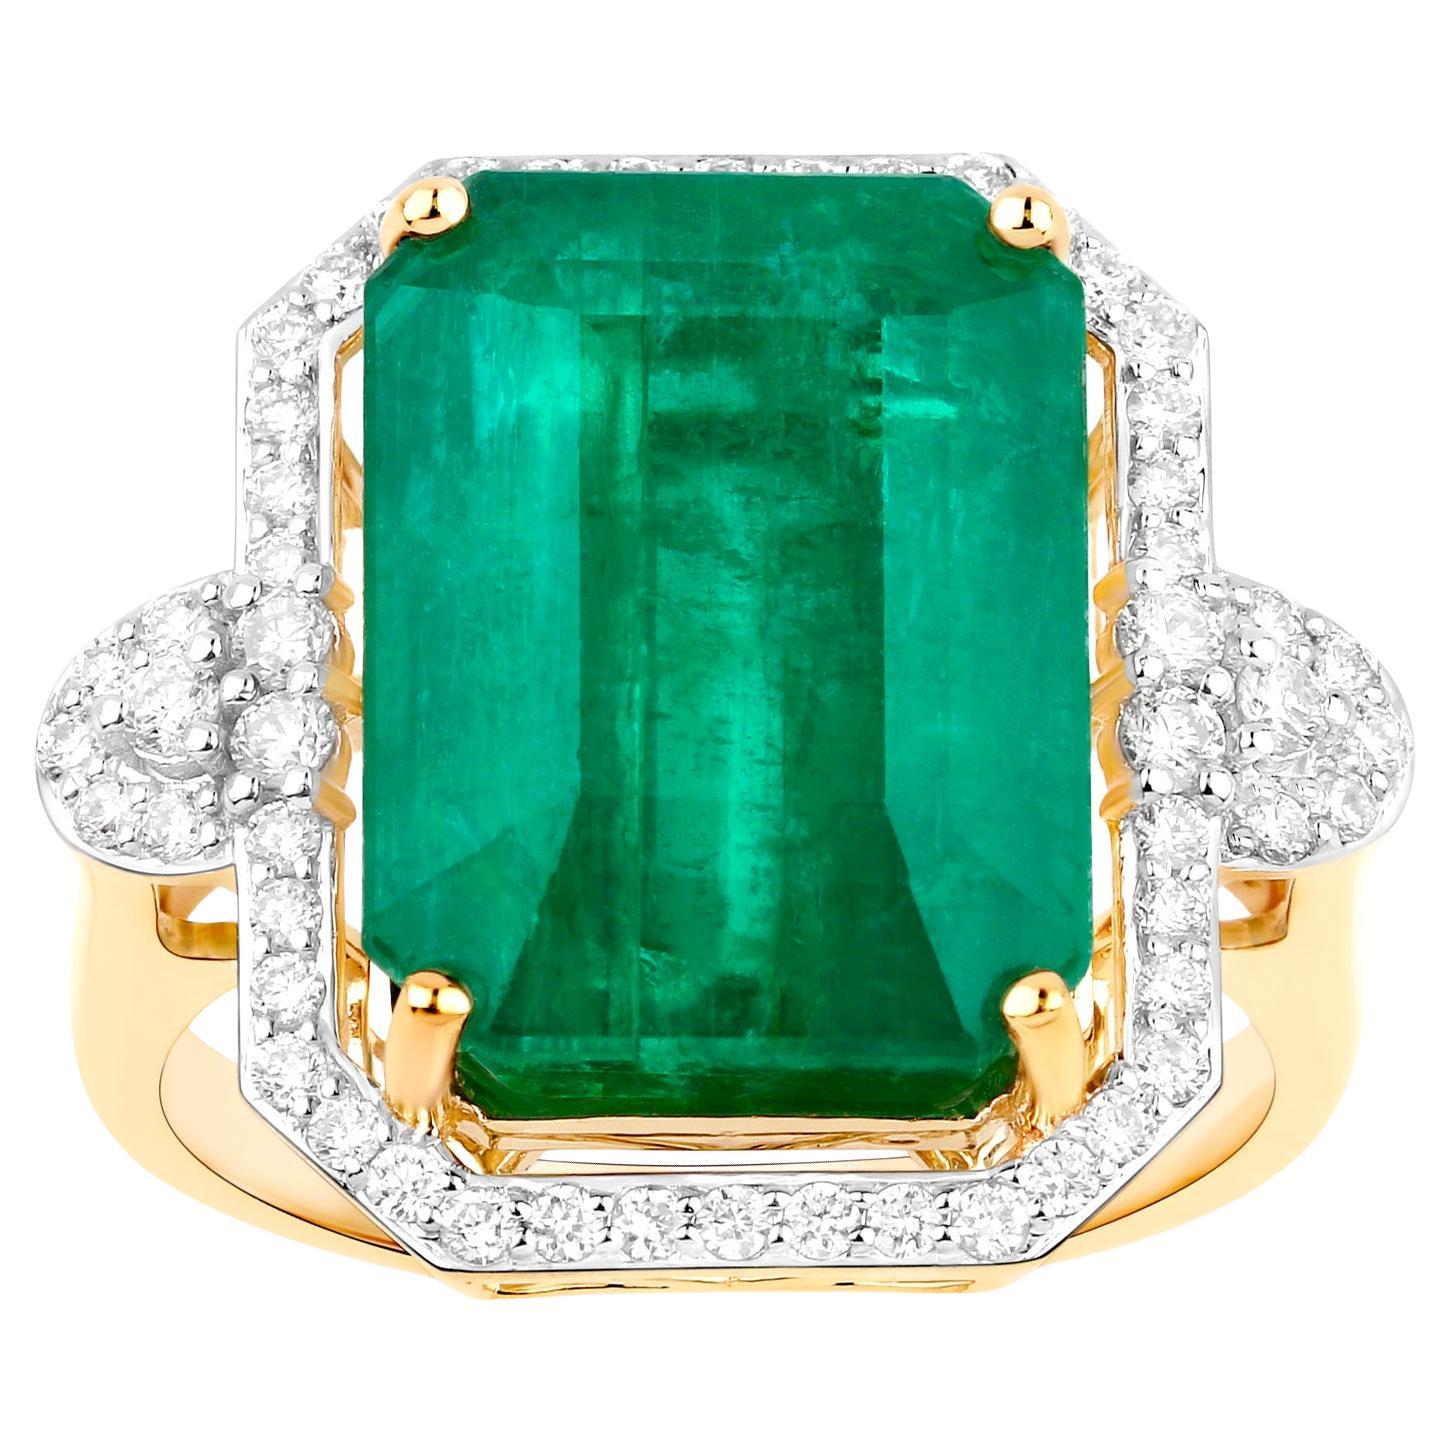 IGI Certified Zambian Emerald Ring Diamond Setting 12 Carats 14K Yellow Gold